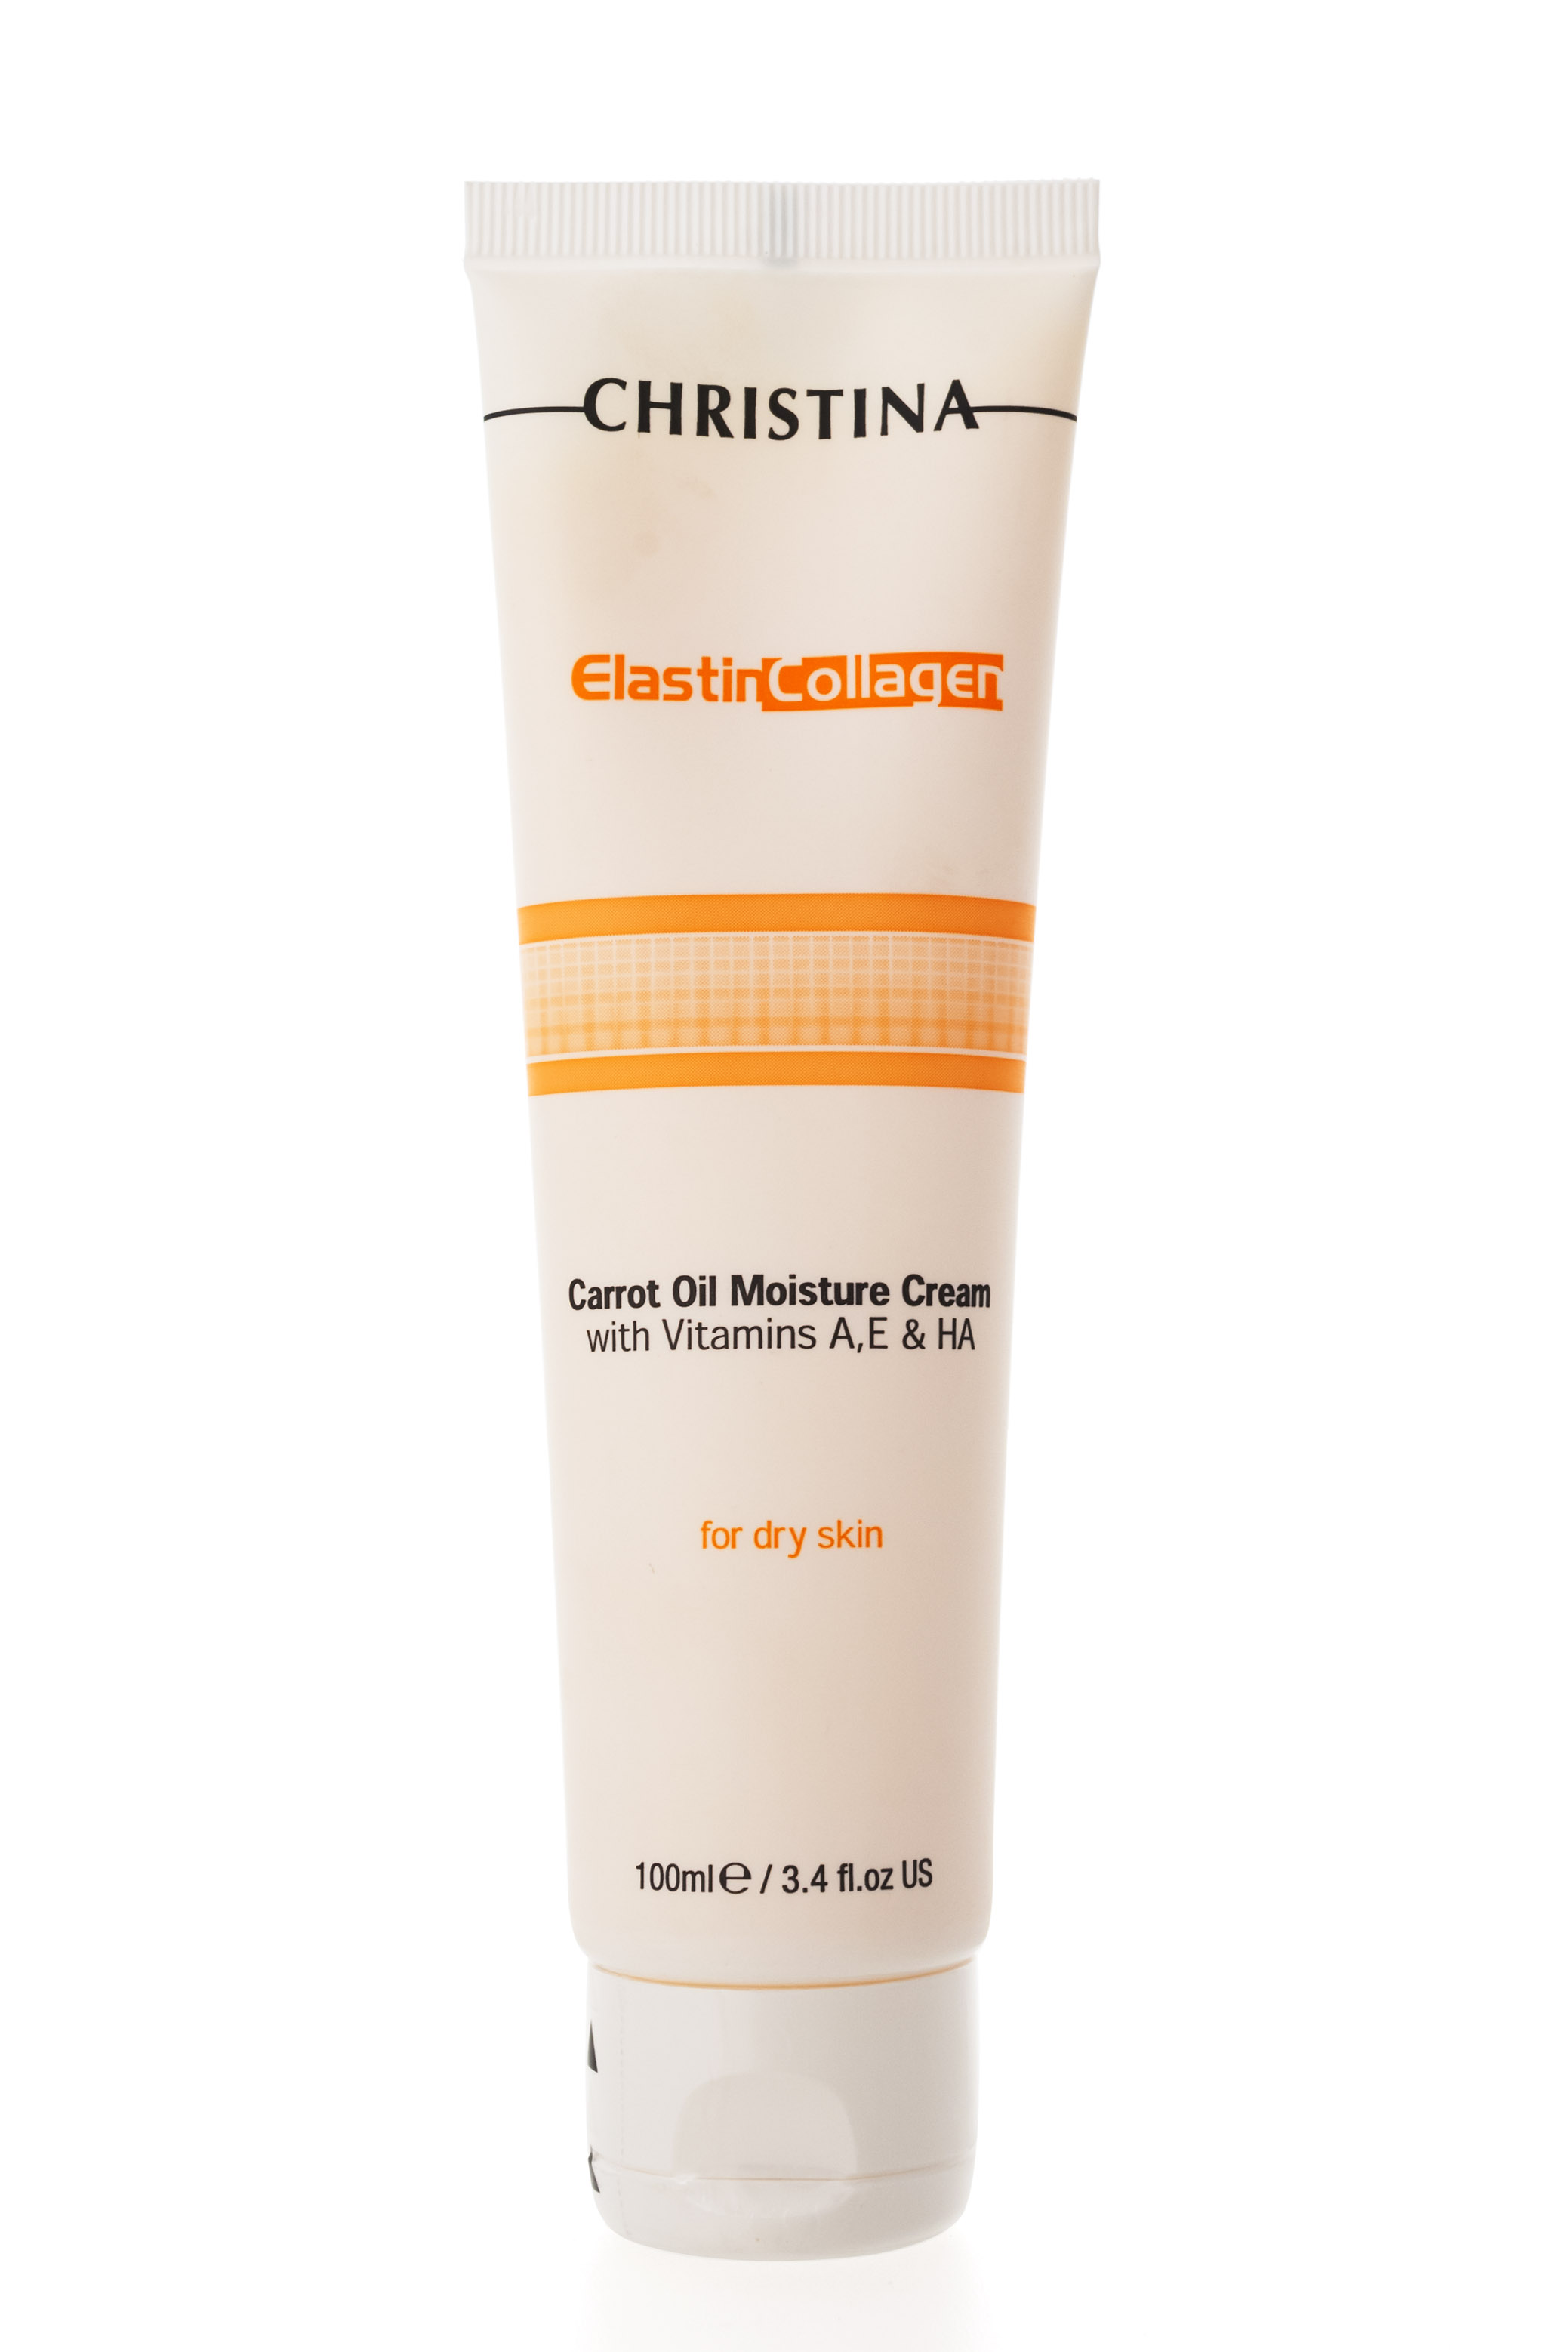 Elastin Collagen Увлажняющий крем с морковным маслом 100 мл (Christina, Fresh)